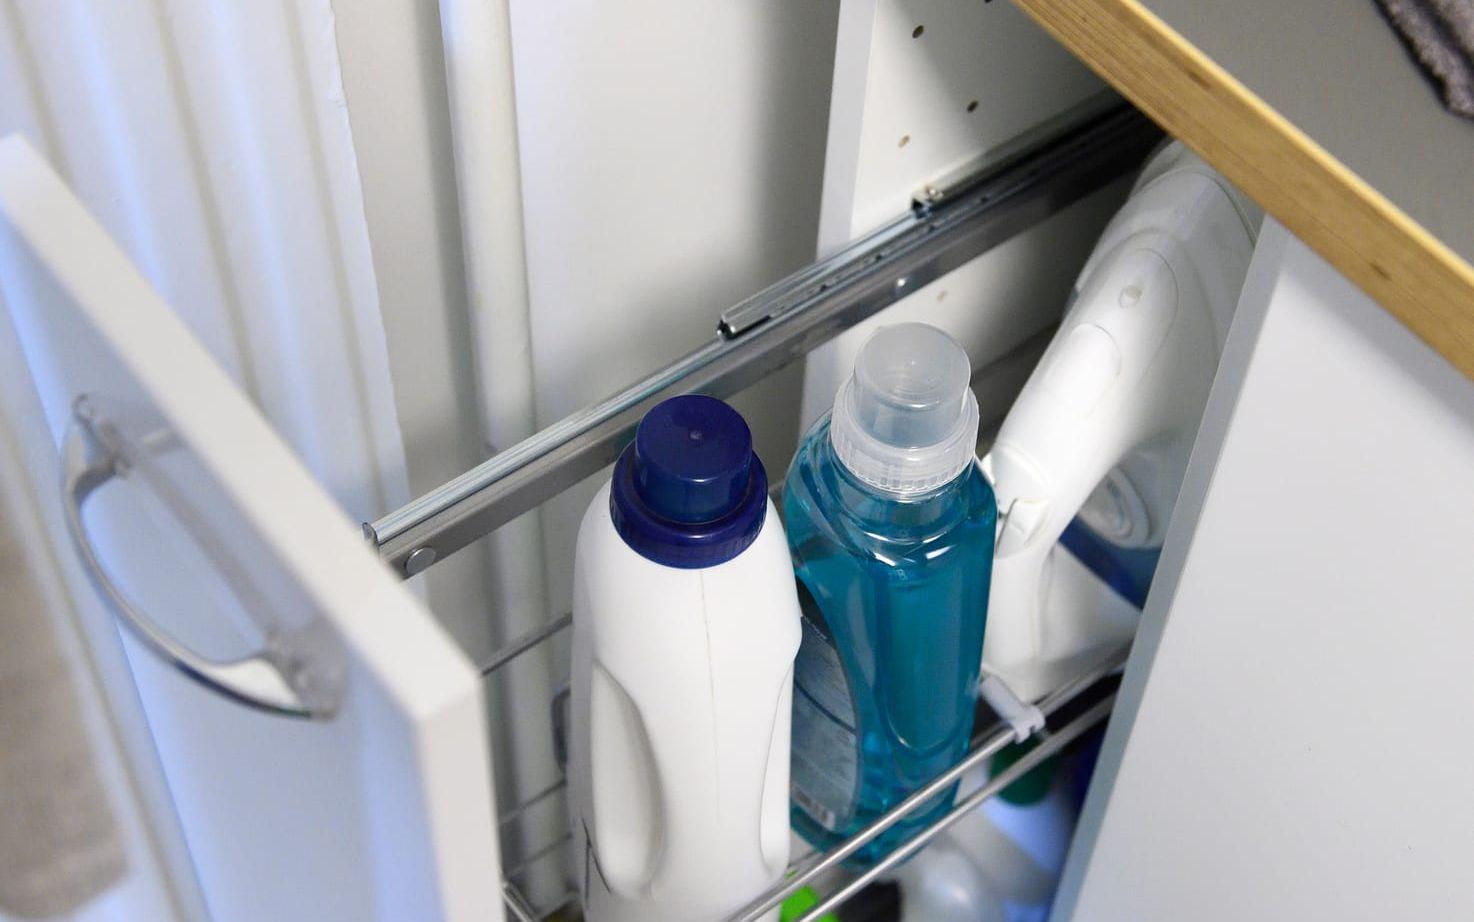 Tvättmedel och sköljmedel finns lättåtkomligt i skåpet under bänken. Foto: Henrik Montgomery/TT